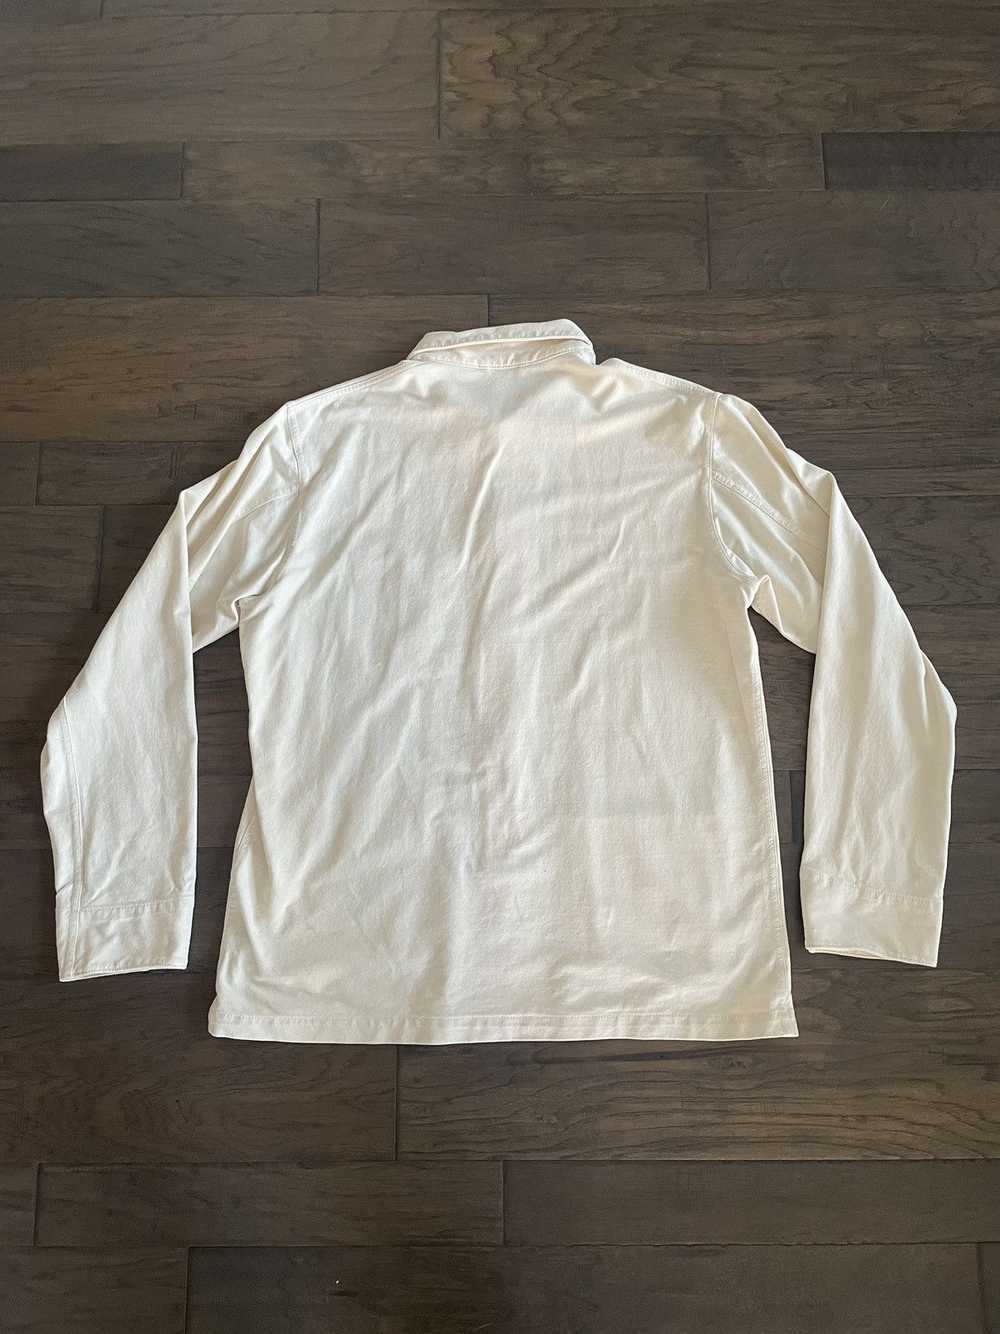 Uniqlo Jersey chore jacket - image 4